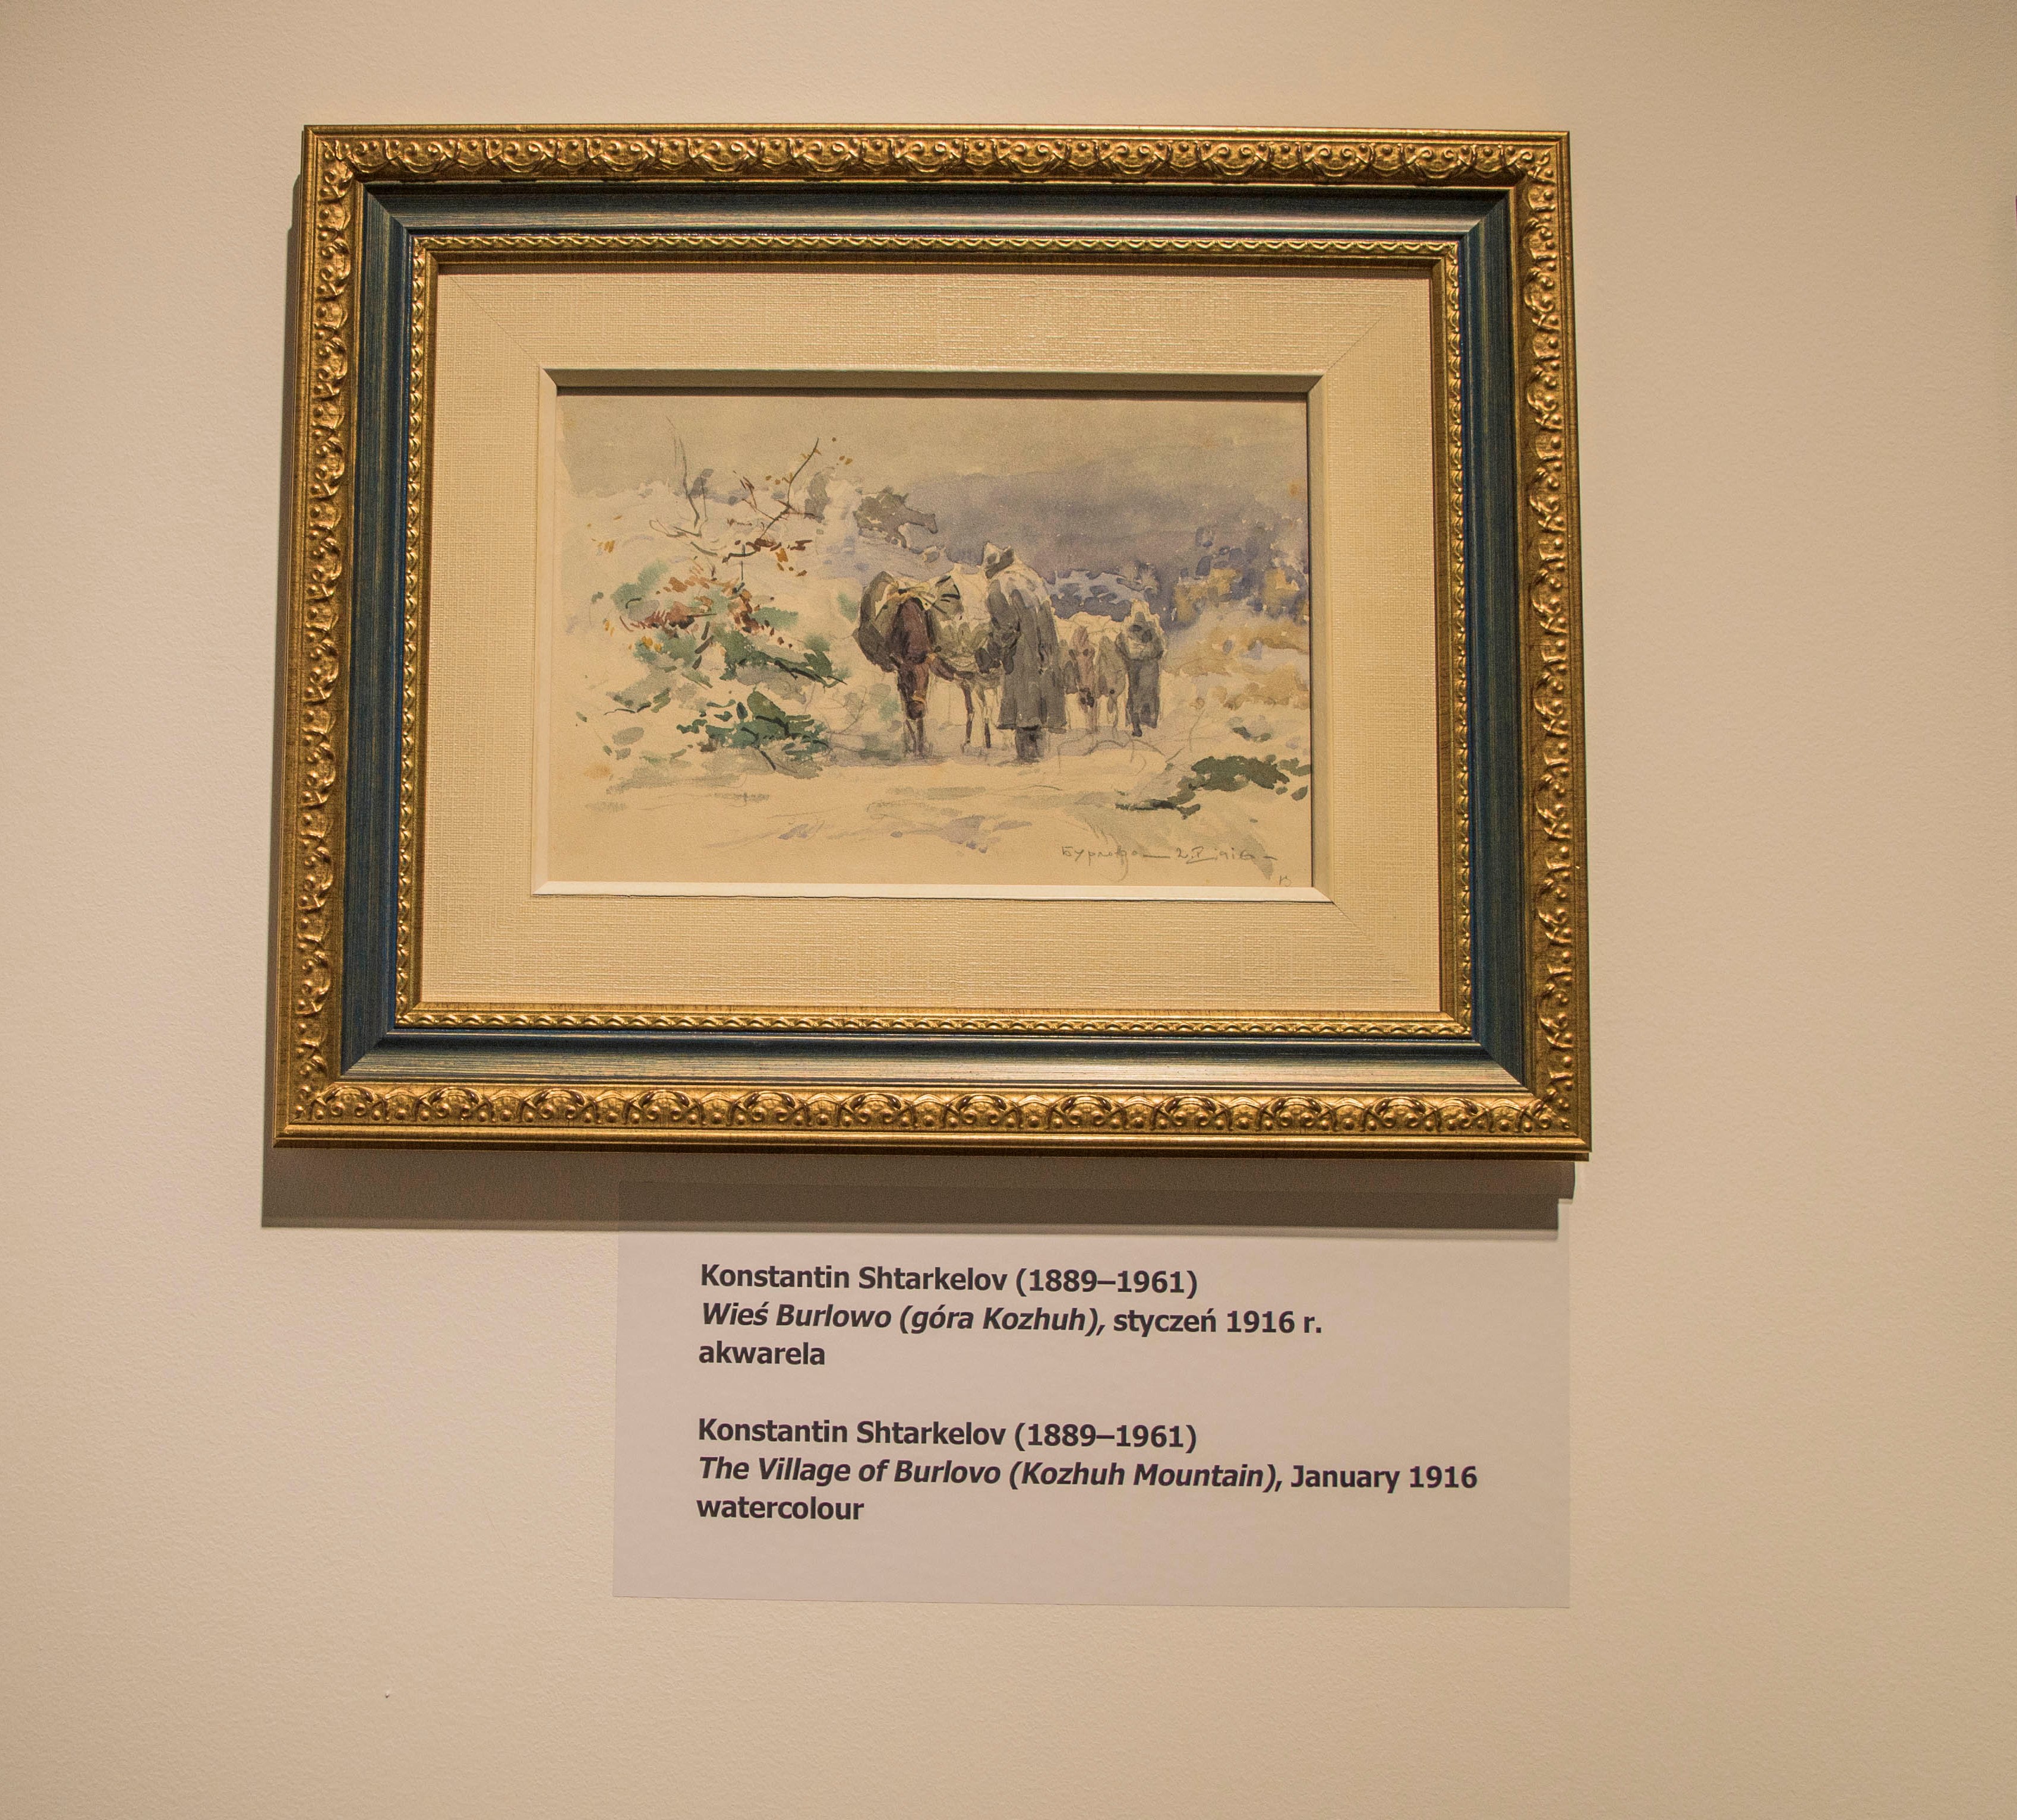 Откриване на изложба от картини от фонда на Националния военно-исторически музей – София в музея „Кралски Лажиенки“ във Варшава  